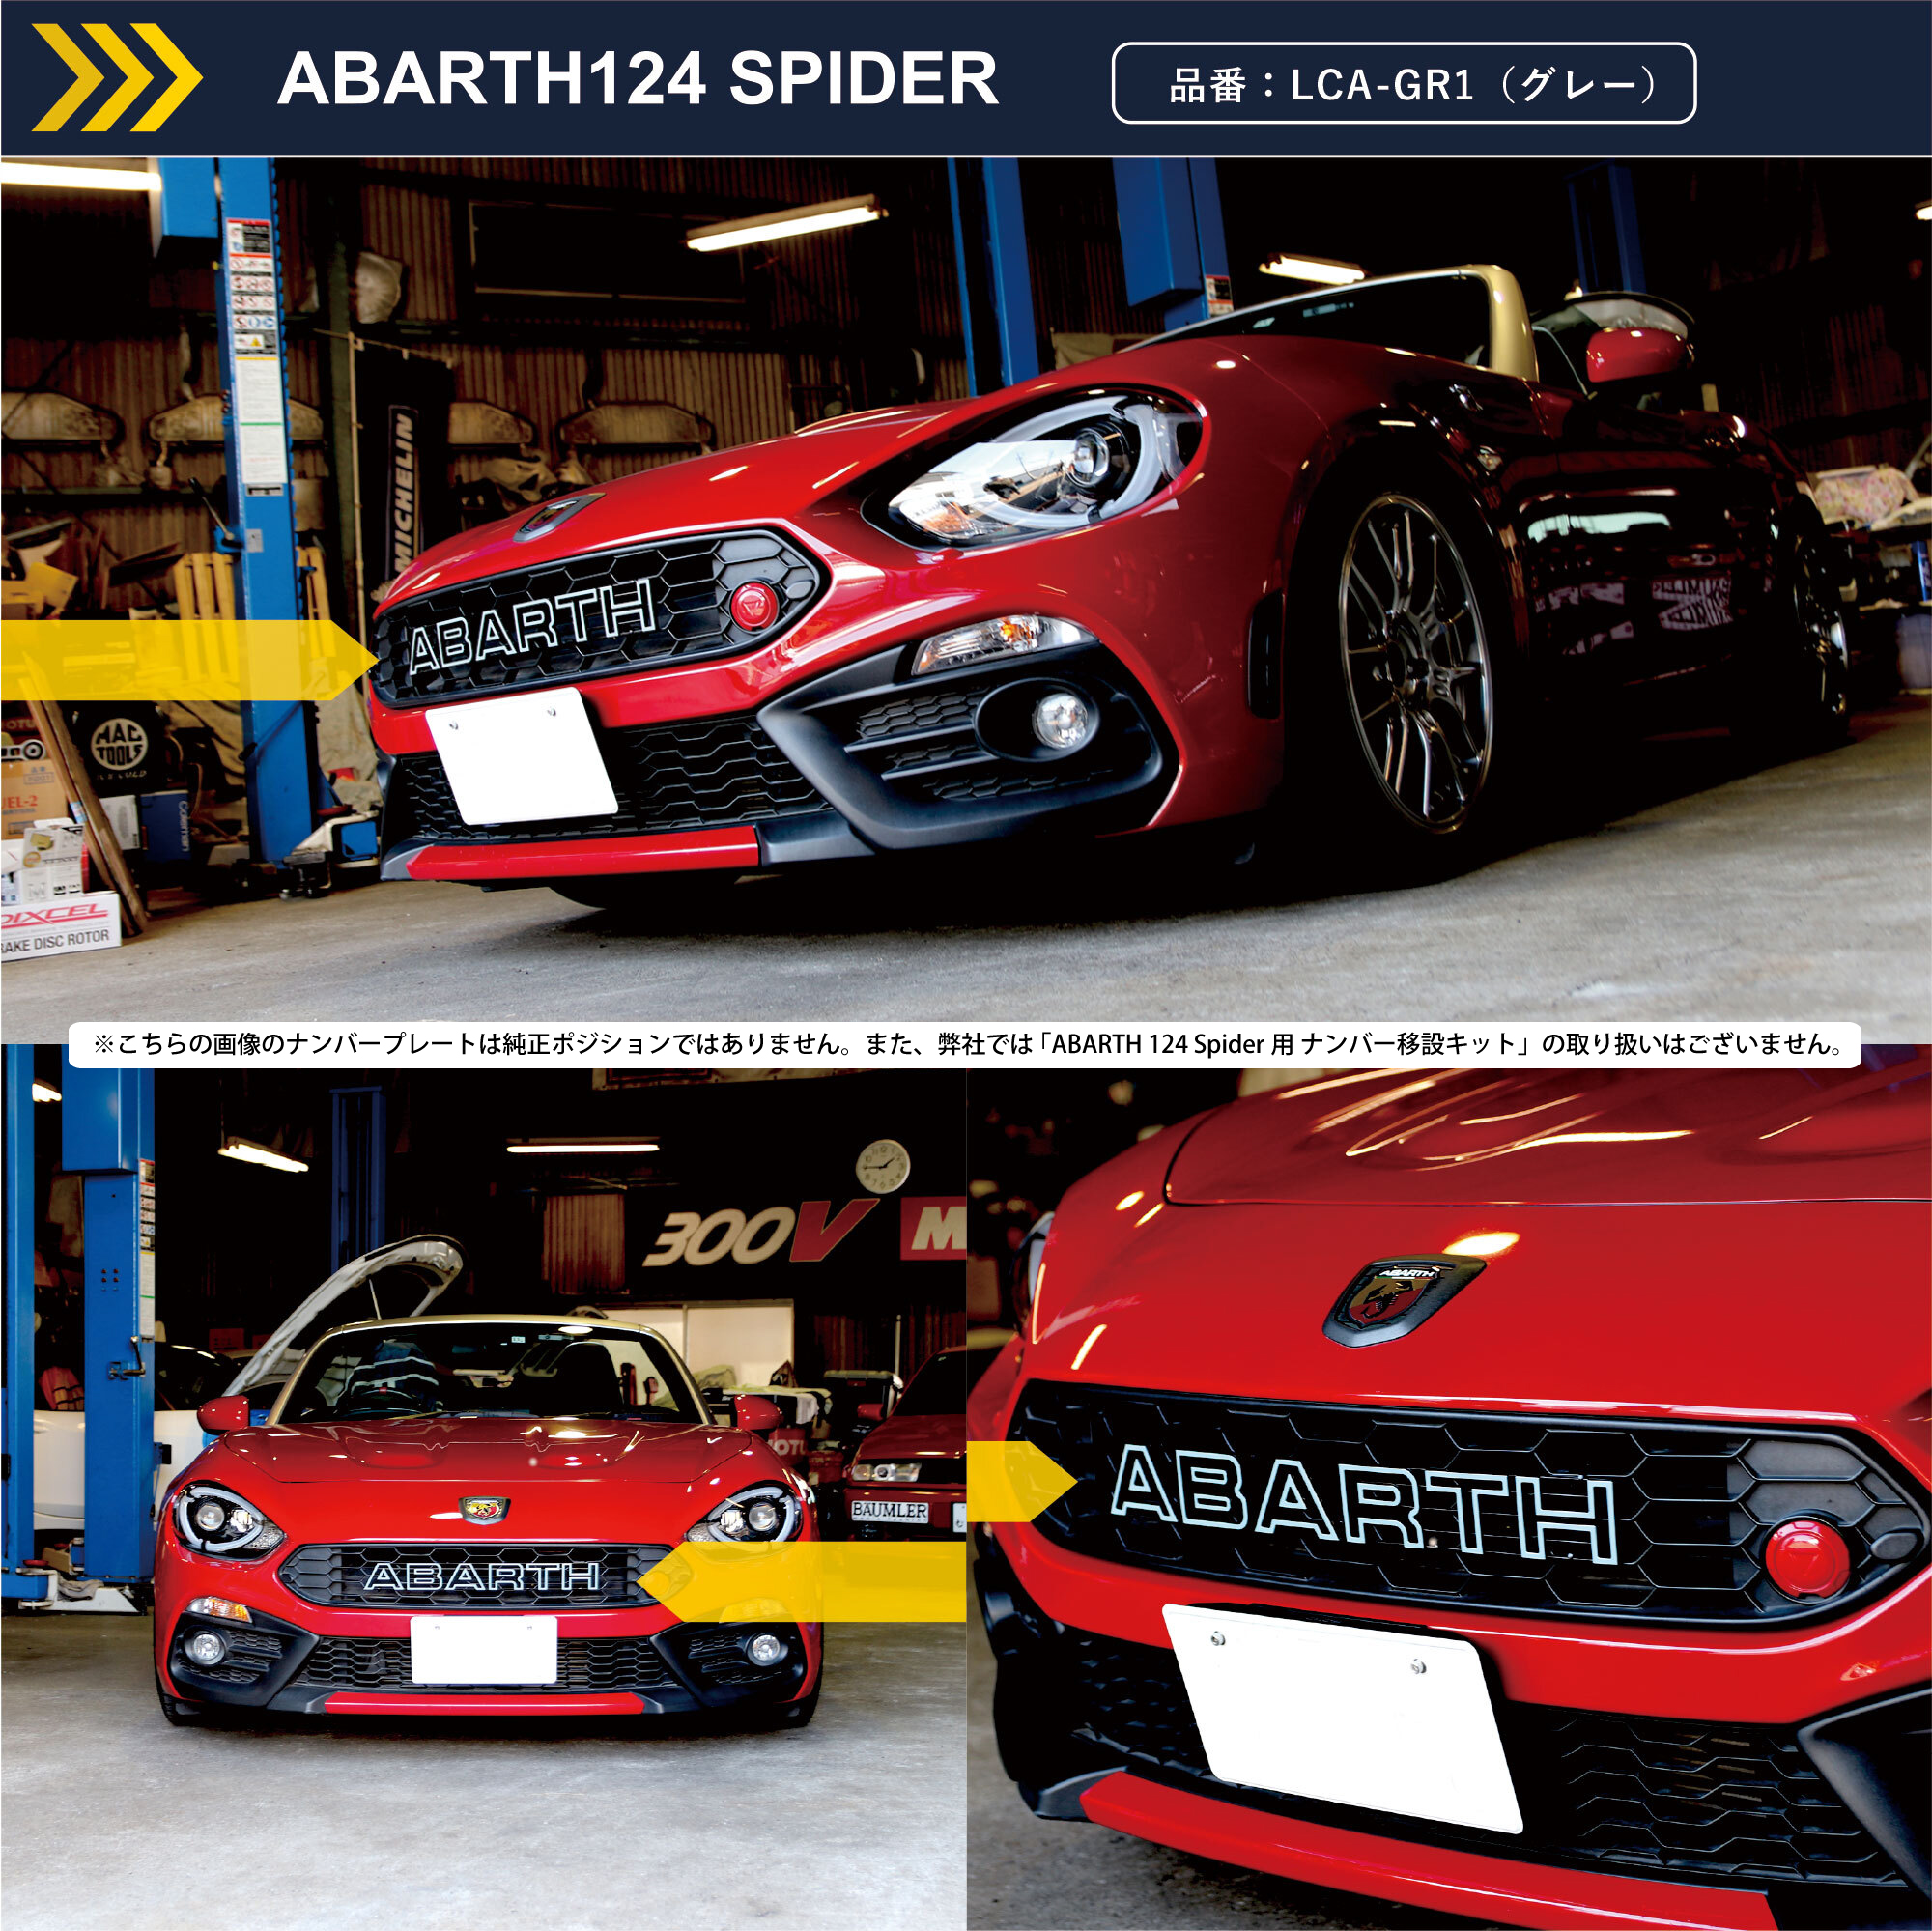 ABARTH 124 spider